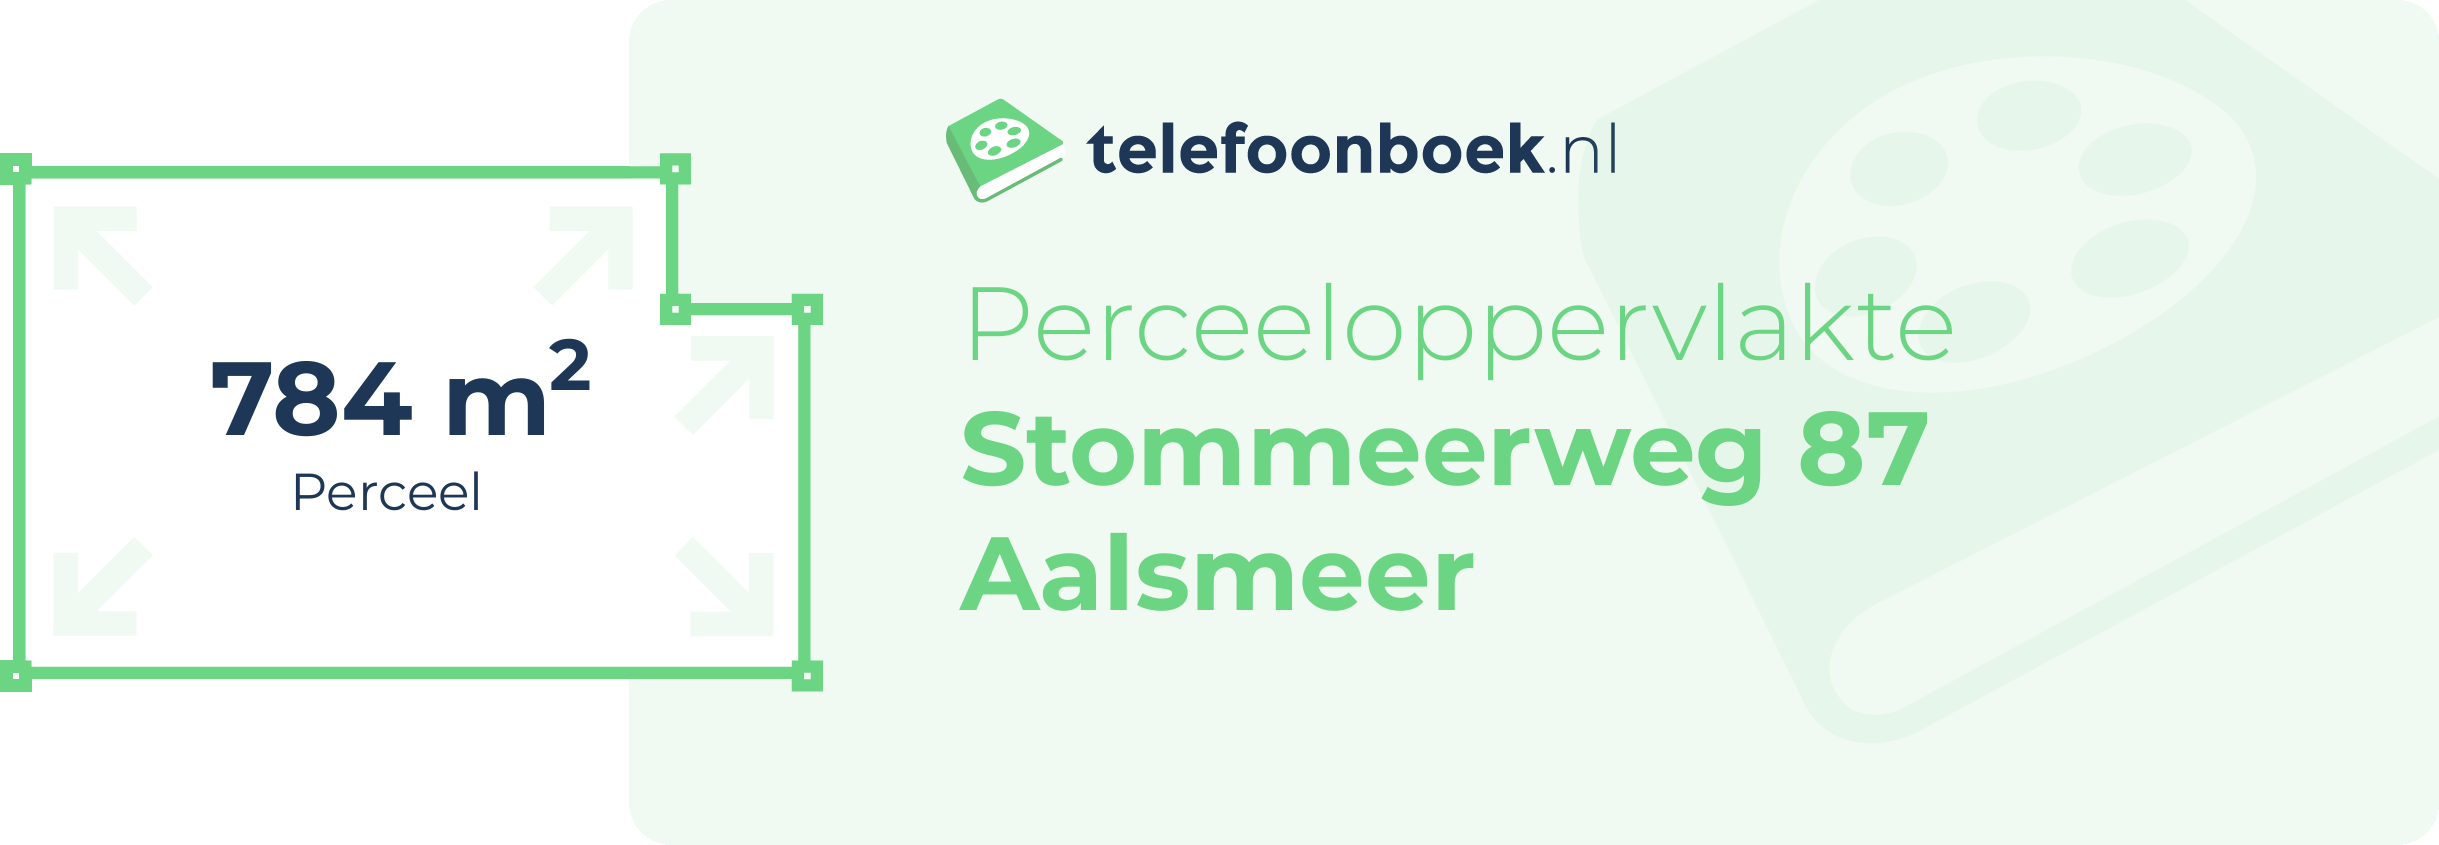 Perceeloppervlakte Stommeerweg 87 Aalsmeer